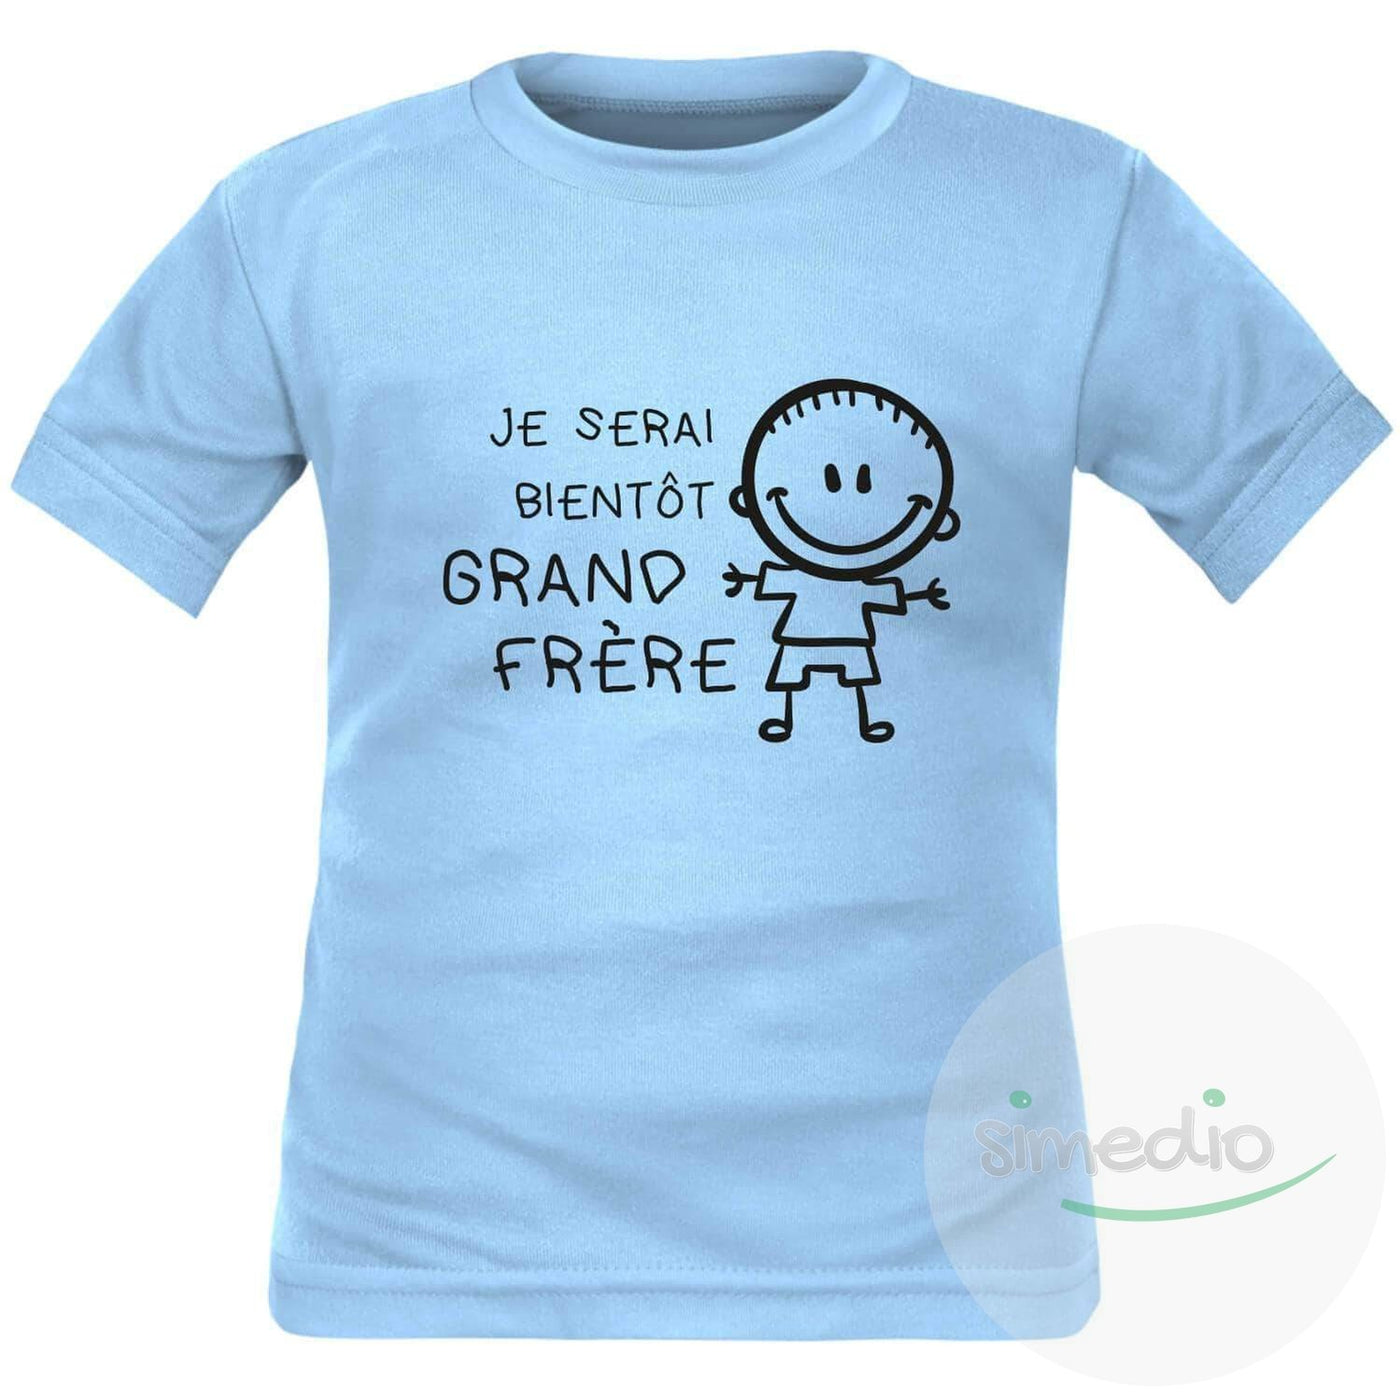 Tee shirt enfant pour futur grand frère : je serai bientôt GRAND FRÈRE, Bleu, 2 ans, Courtes - SiMEDIO